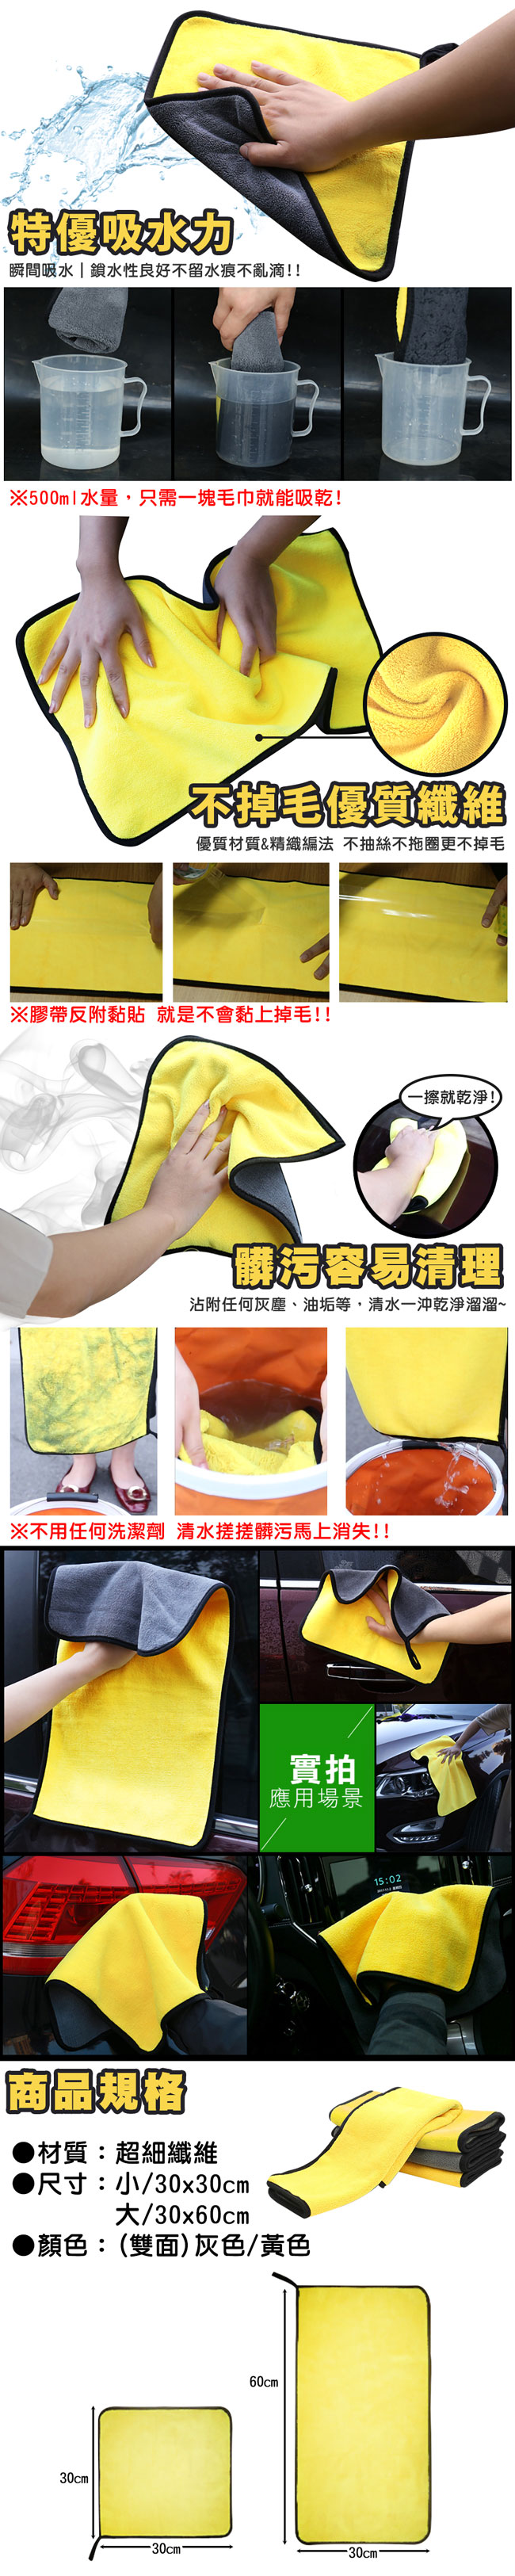 EZlife雙色超柔超吸水洗車巾2入組(30*30cm)